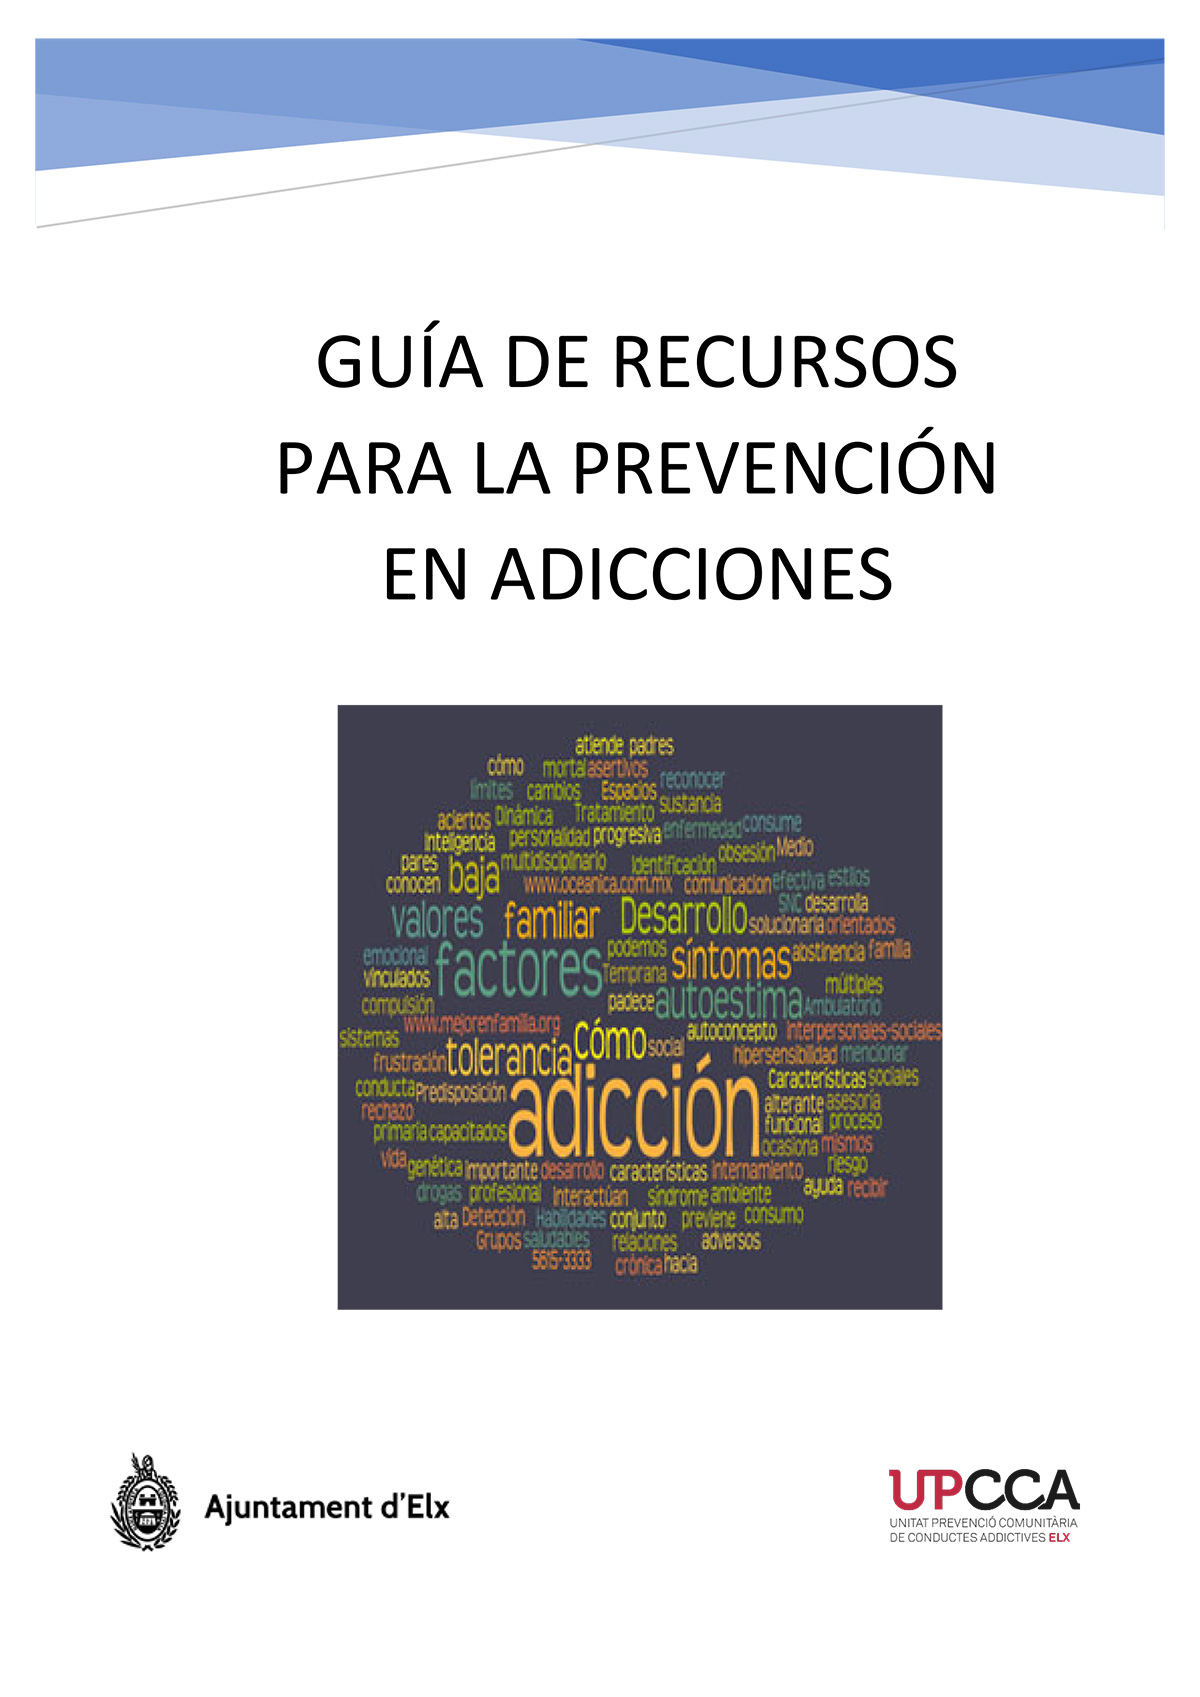 Guía de recursos para la prevención de adicciones